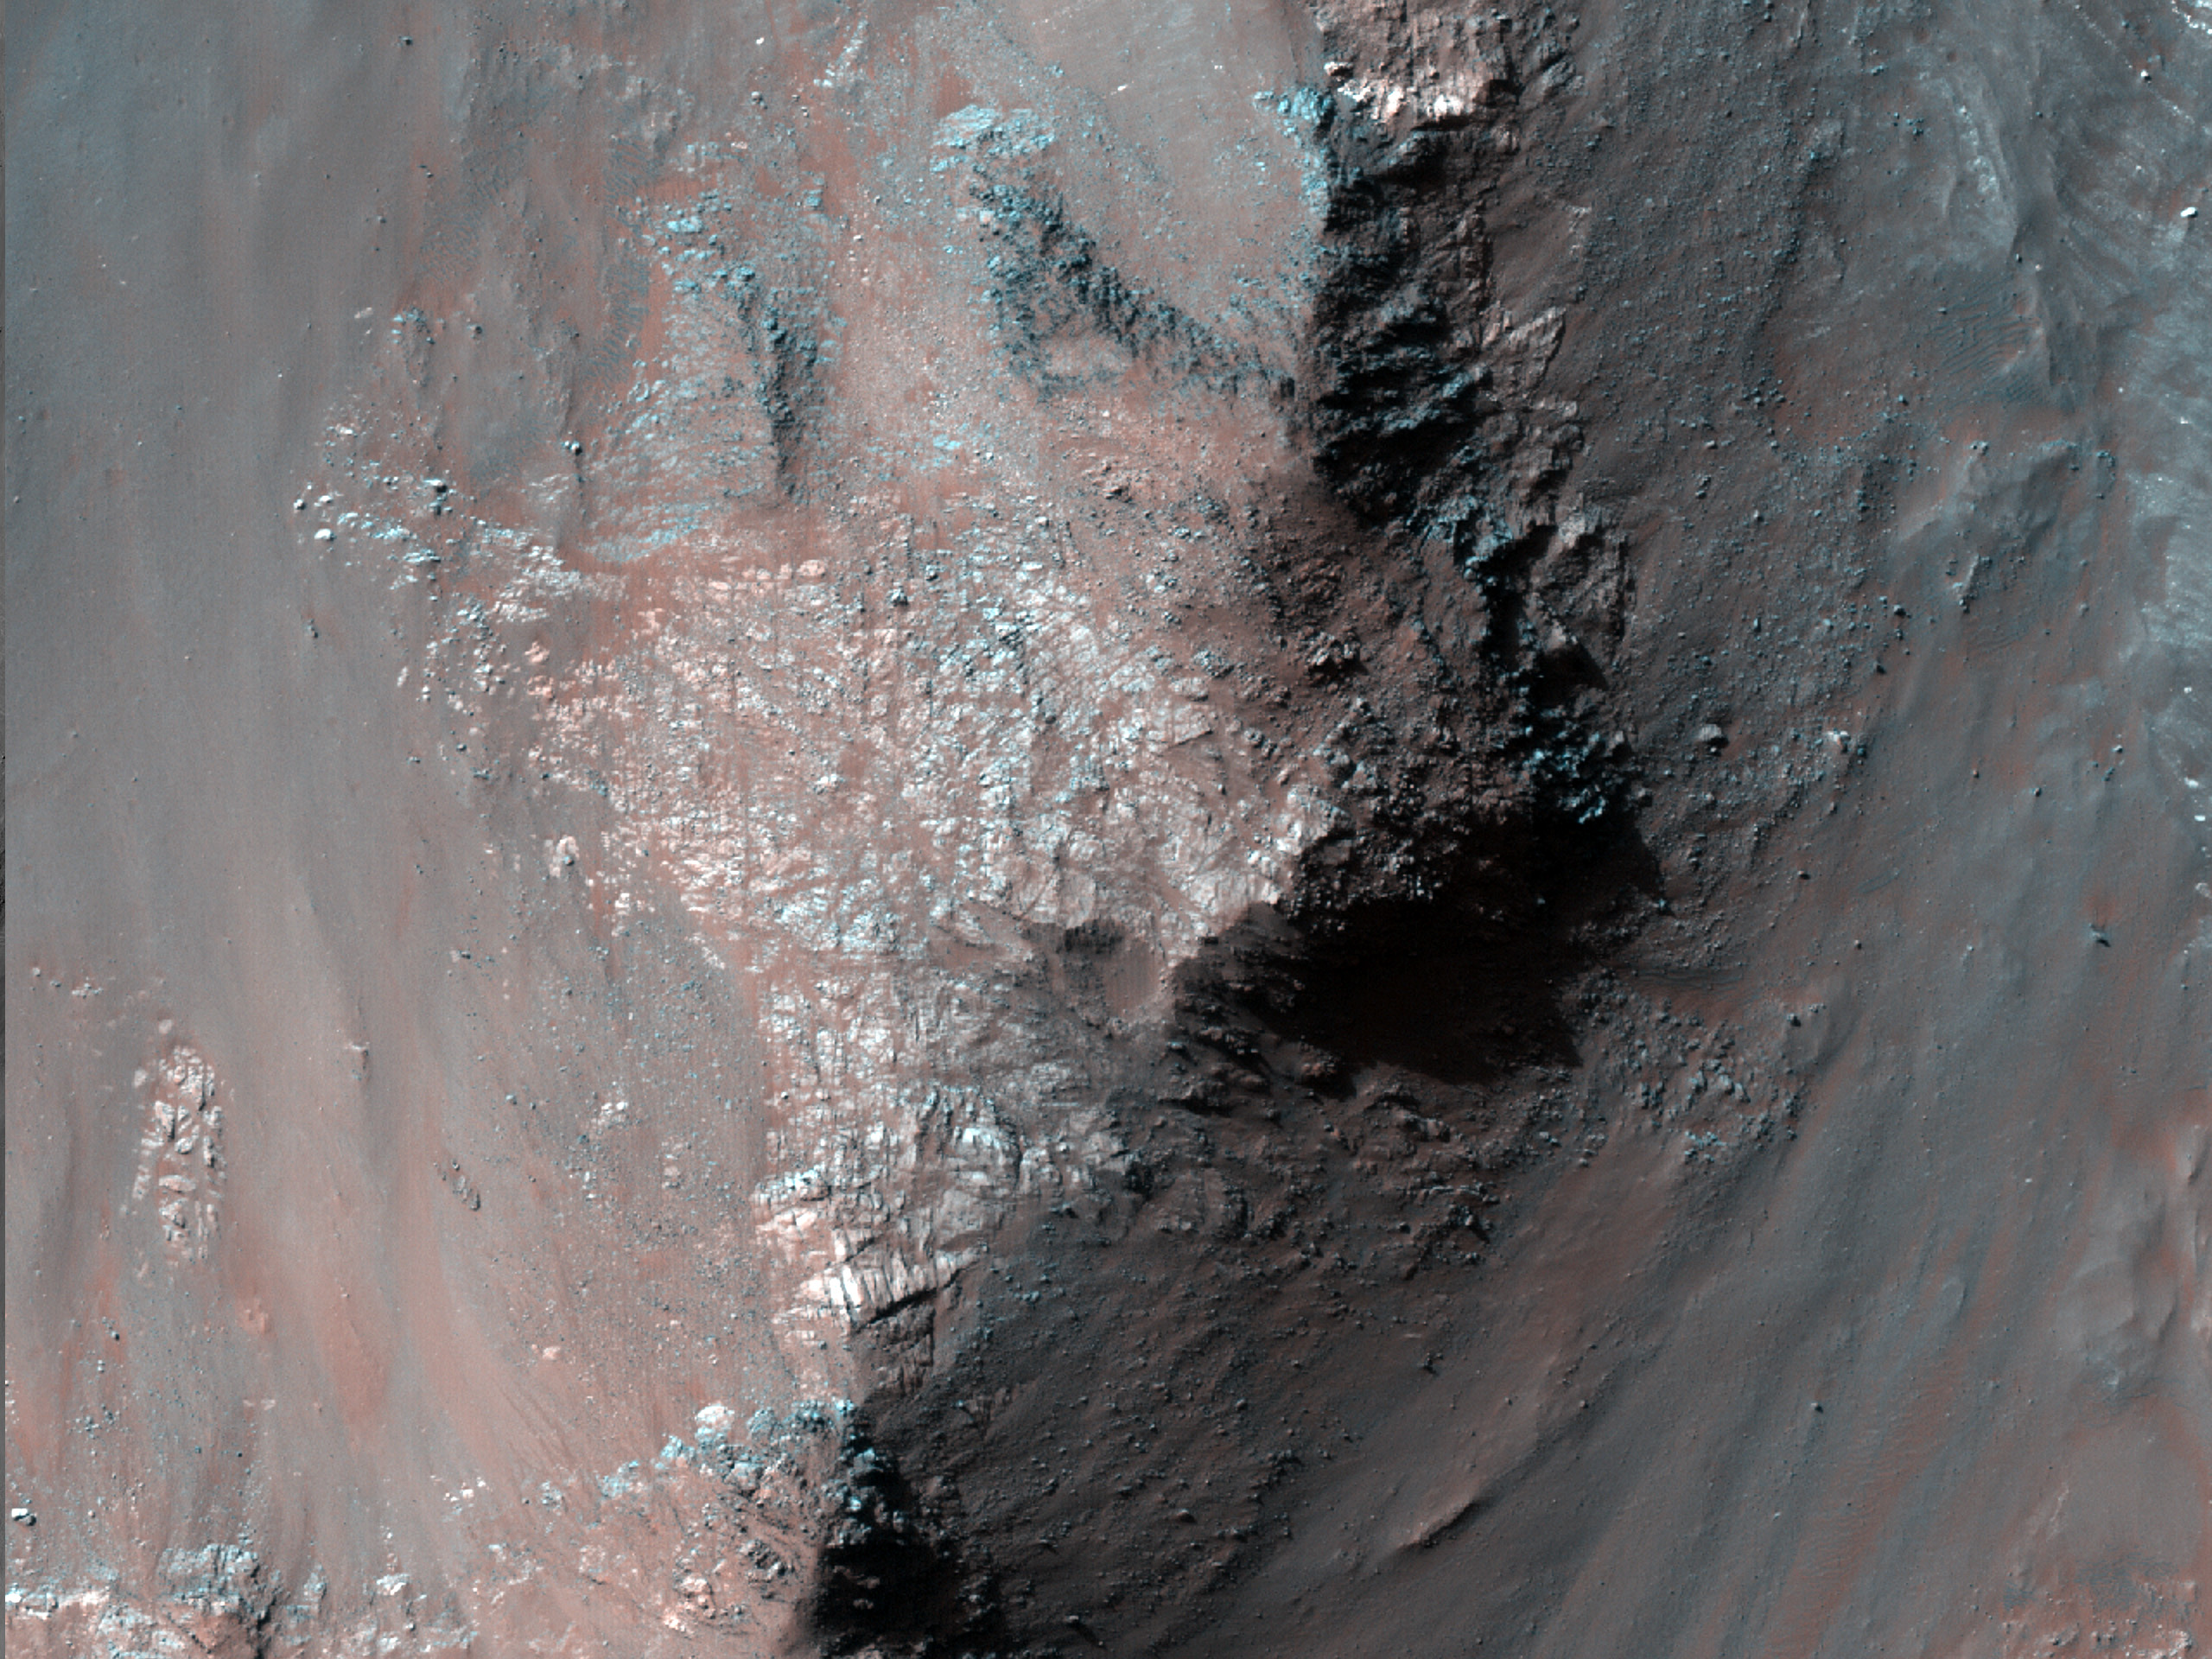 Coprates Chasma’daki yan kayaç eğimleri boyunca ortaya çıkmış çeşitli maddeler